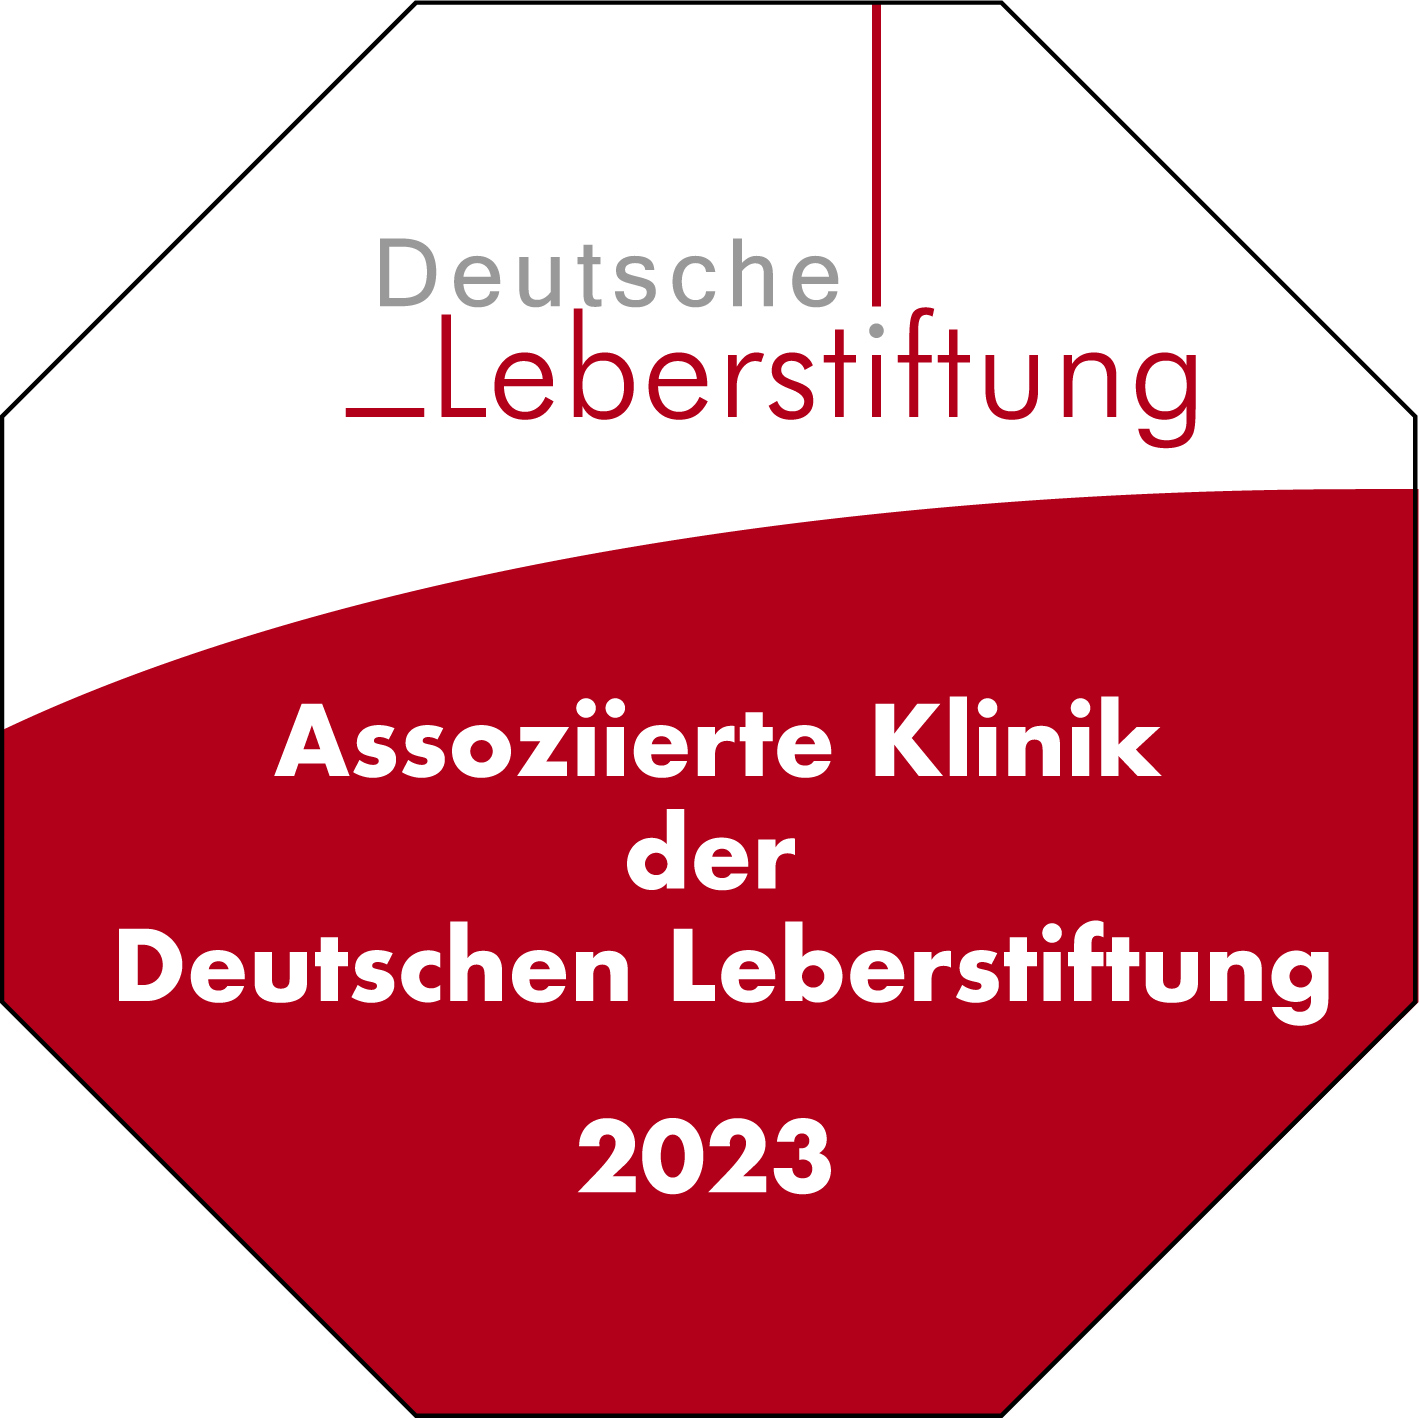 Assoziierte Klinik der Deutschen Leberstiftung 2023